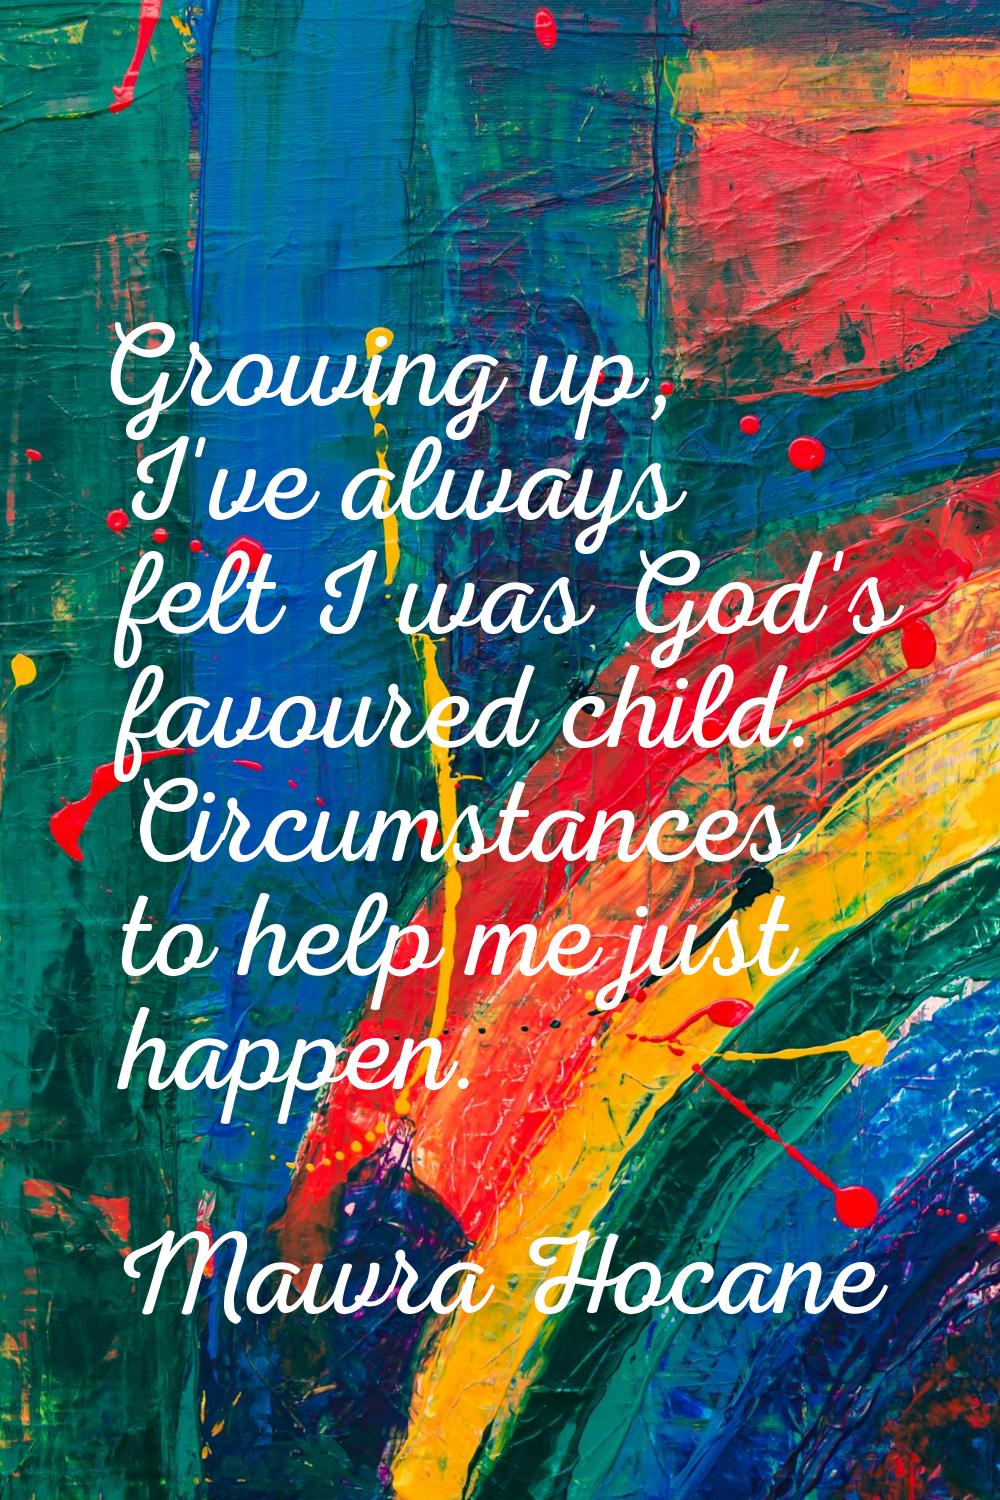 Growing up, I've always felt I was God's favoured child. Circumstances to help me just happen.